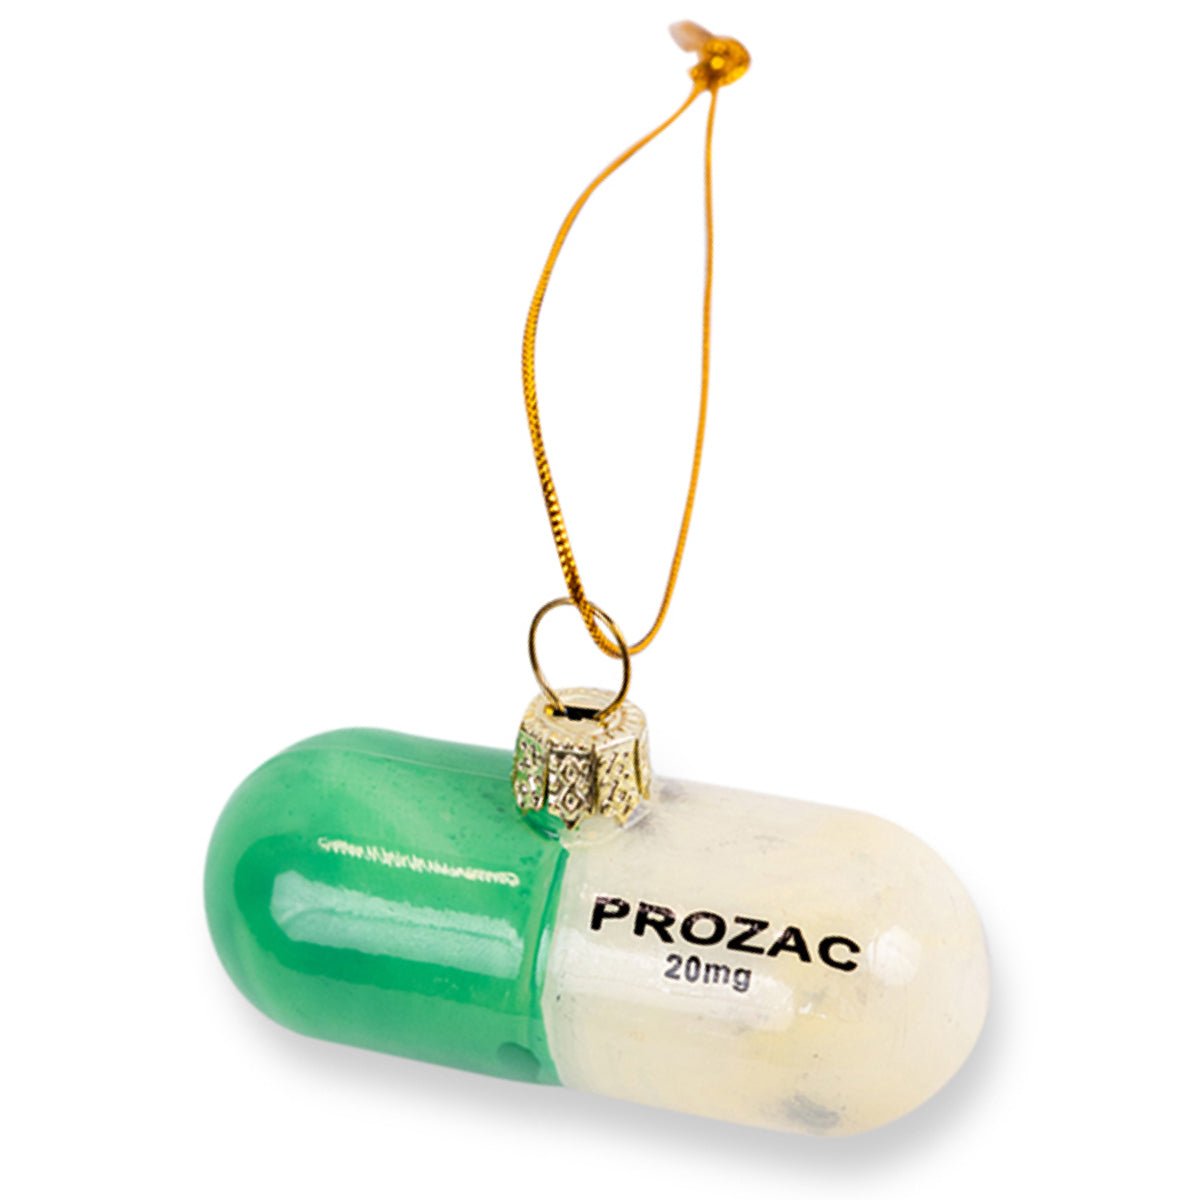 prozac-ornament_1512x.jpg